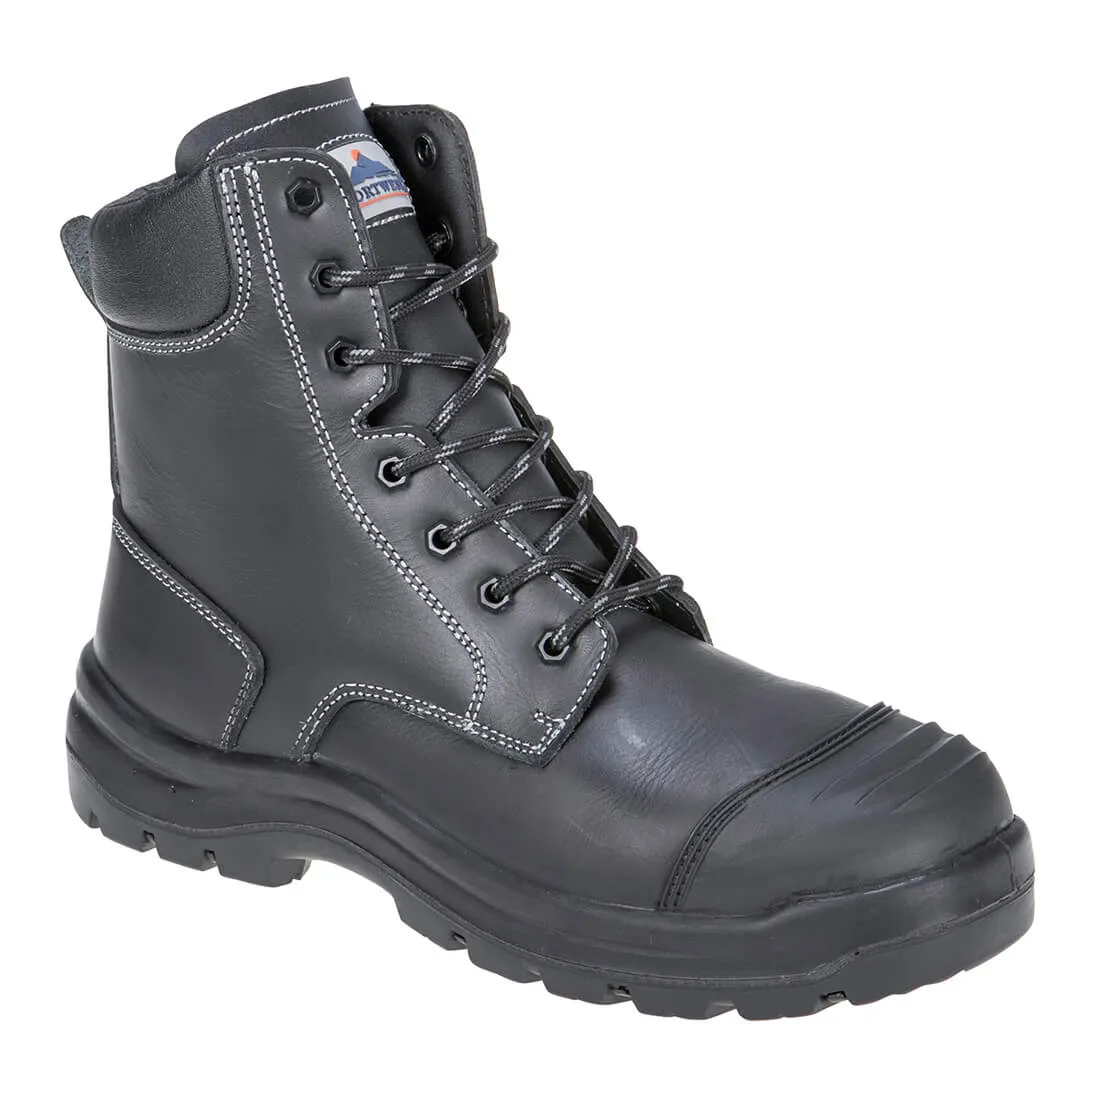 Portwest Pro Mens Eden S3 Safety Boots - Black, Size 8